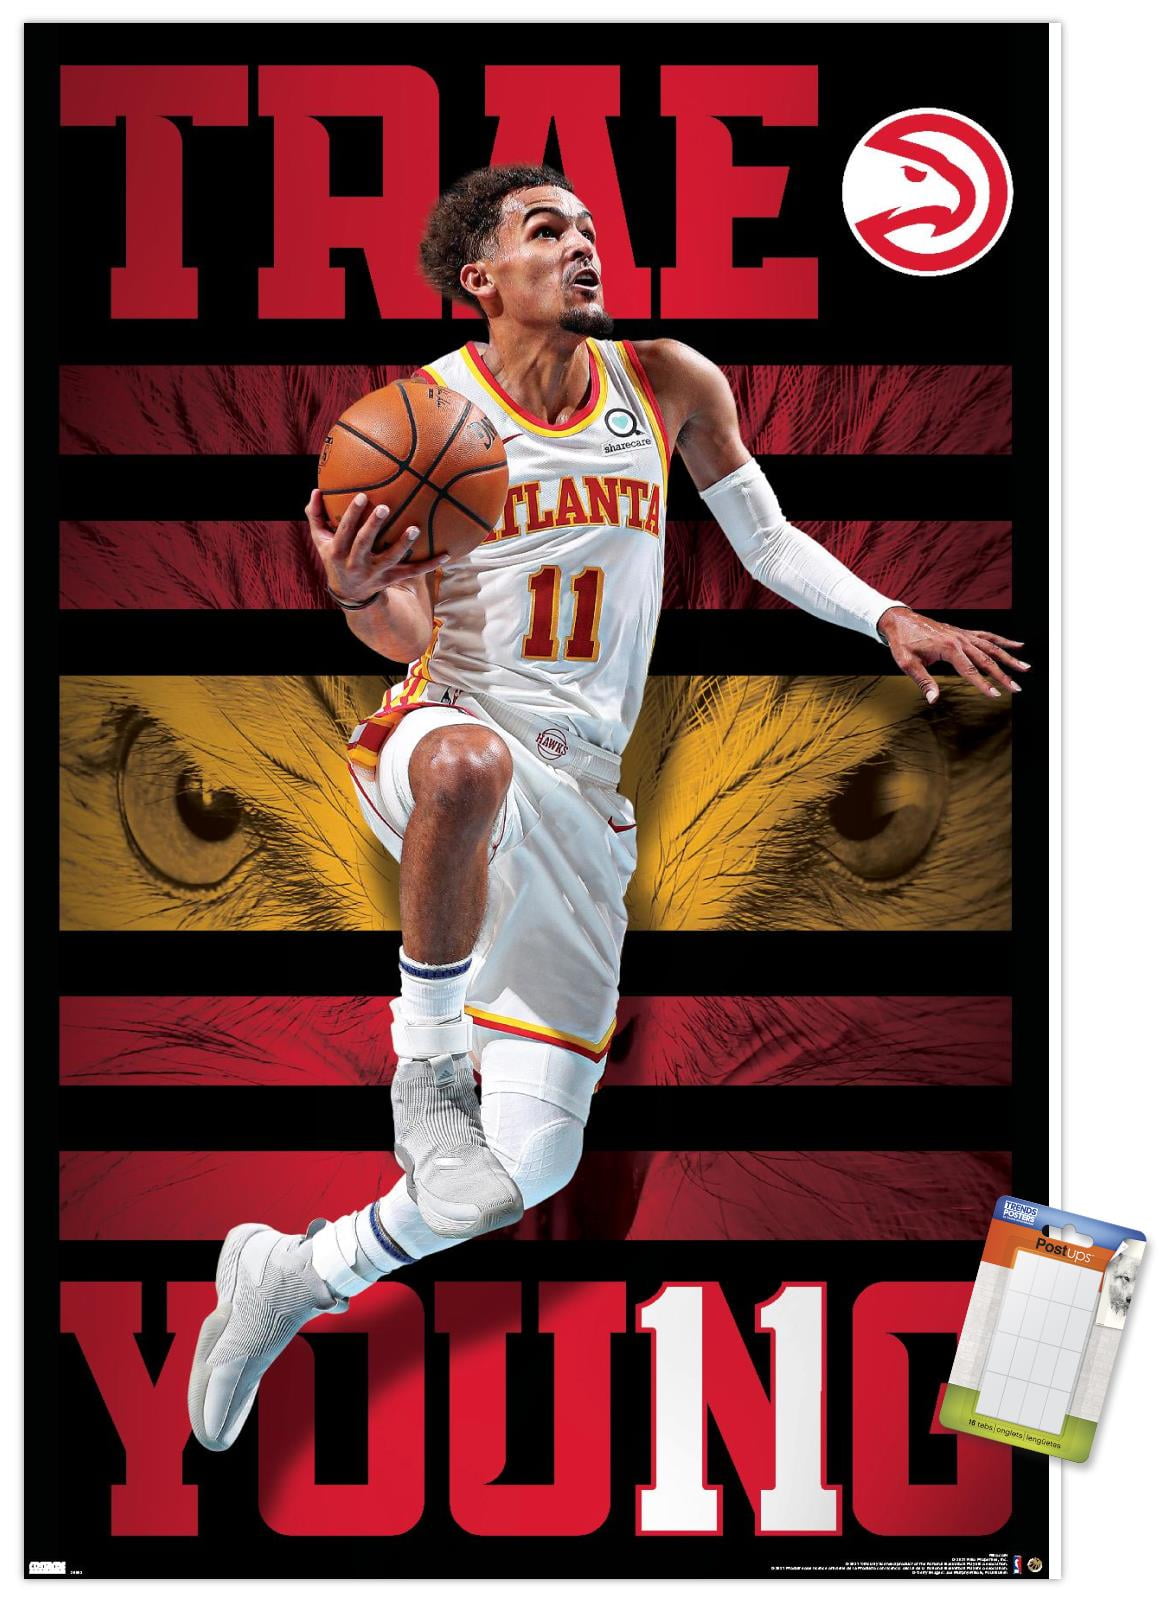 NBA Atlanta Hawks - Trae Young 20 Wall Poster with Pushpins